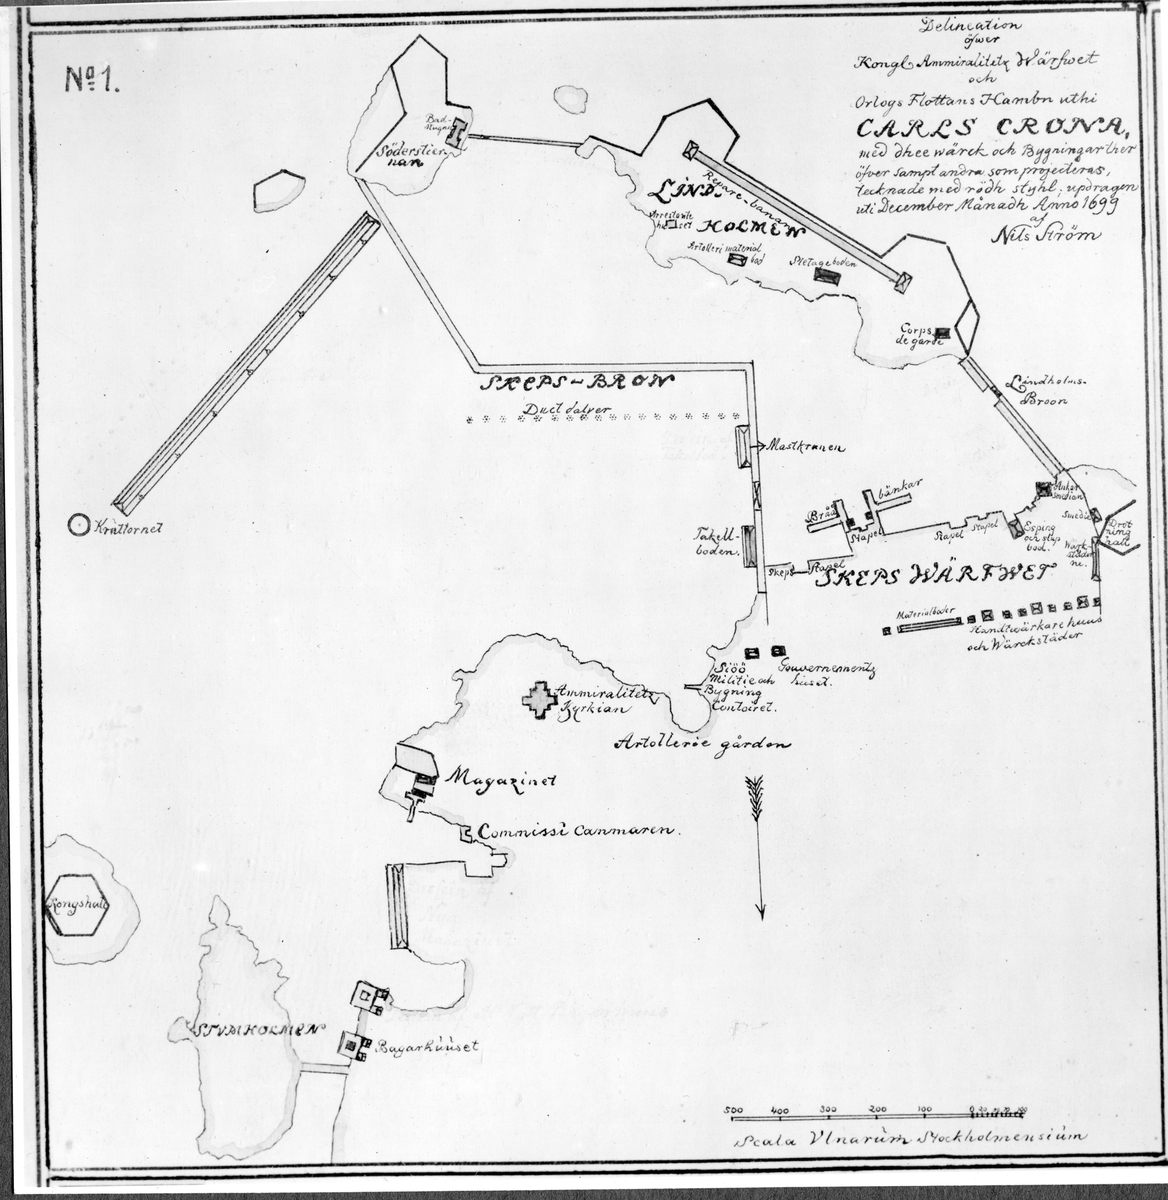 Karta över amiralitetsvarvet och örlogsflottans hamn uti carlskrona
uppdraget uti december månad 1699 av Nils Ström